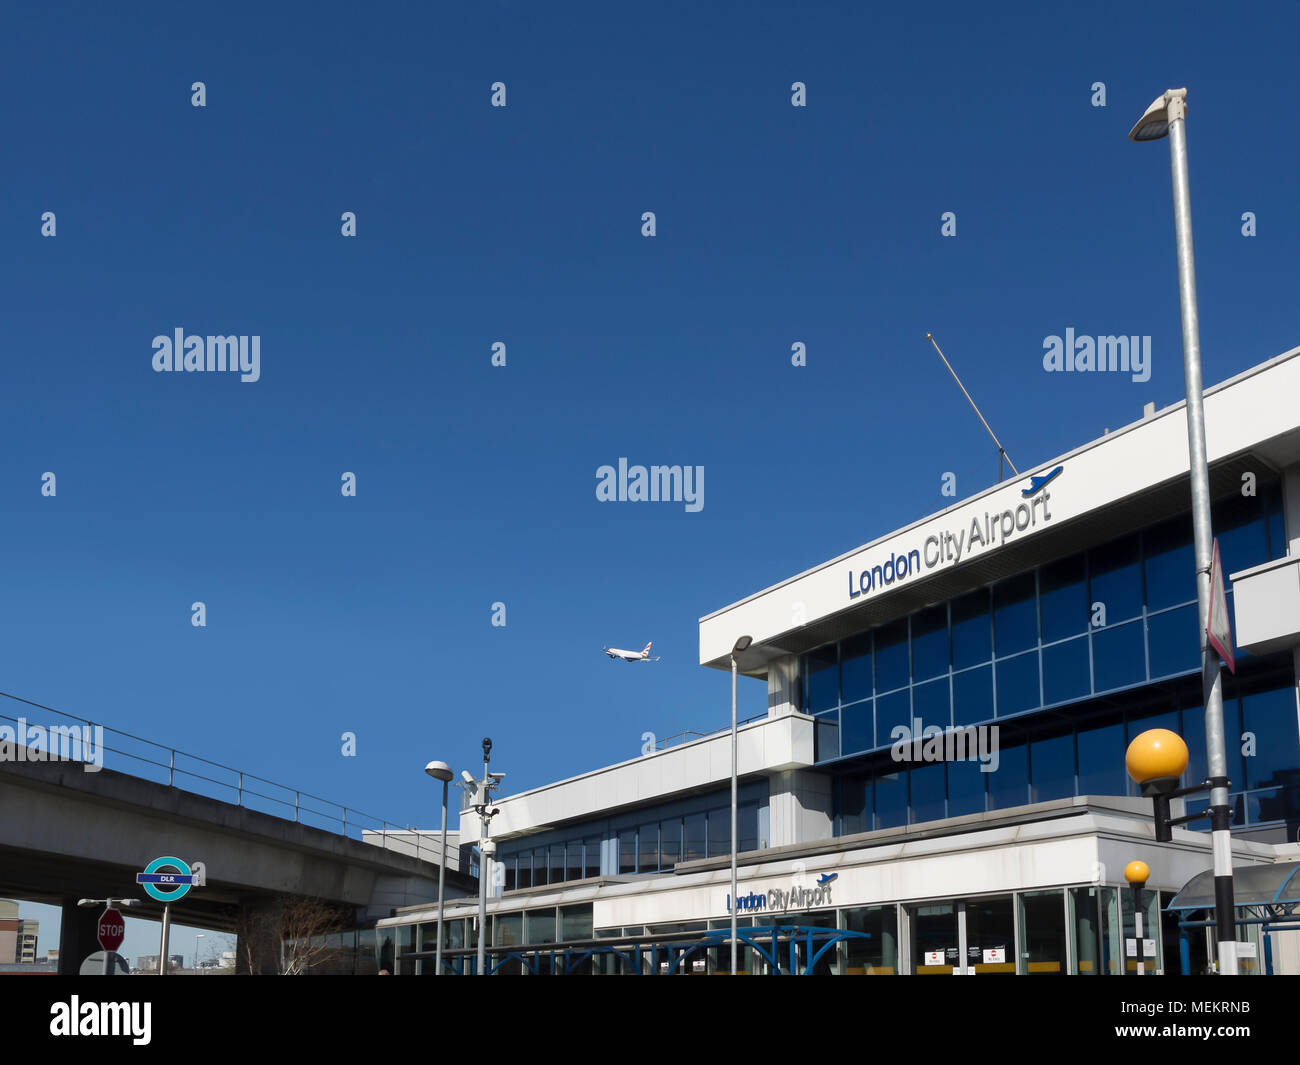 LONDRES, Royaume-Uni - 05 AVRIL 2018 : vue extérieure du terminal de l'aéroport de City avec panneau Banque D'Images